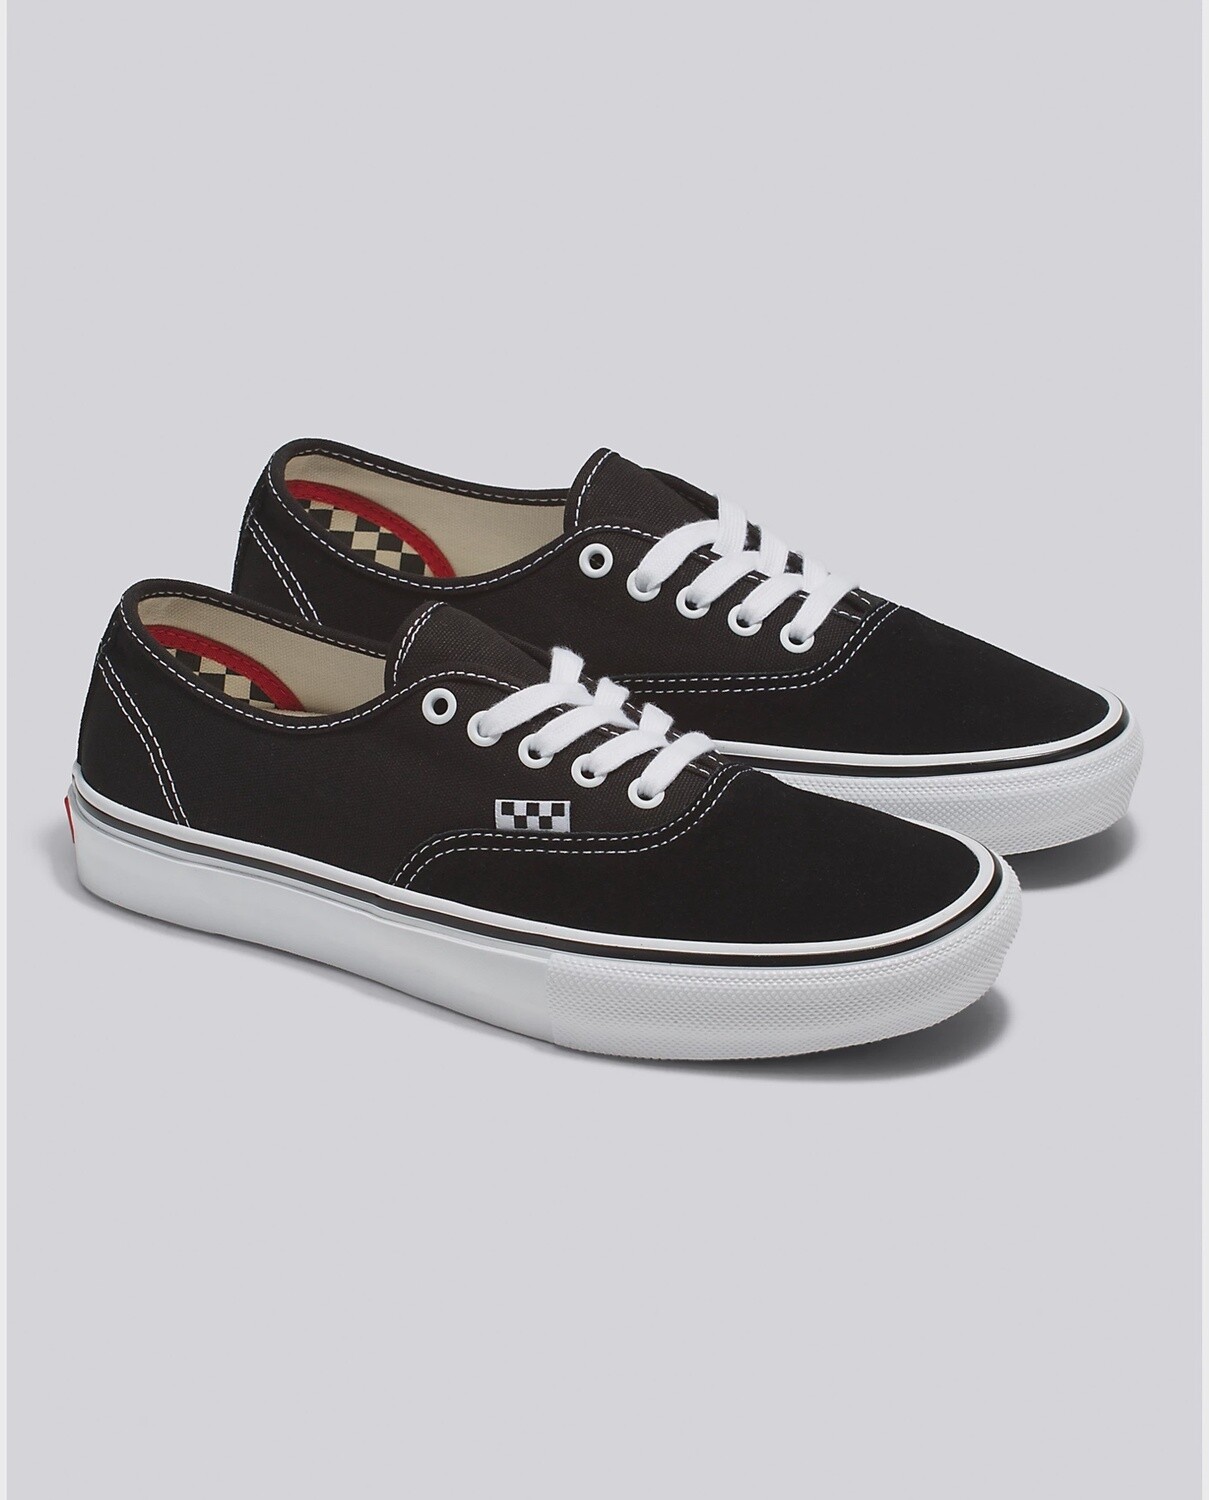 Vans Skate Authentic Black / White Shoes